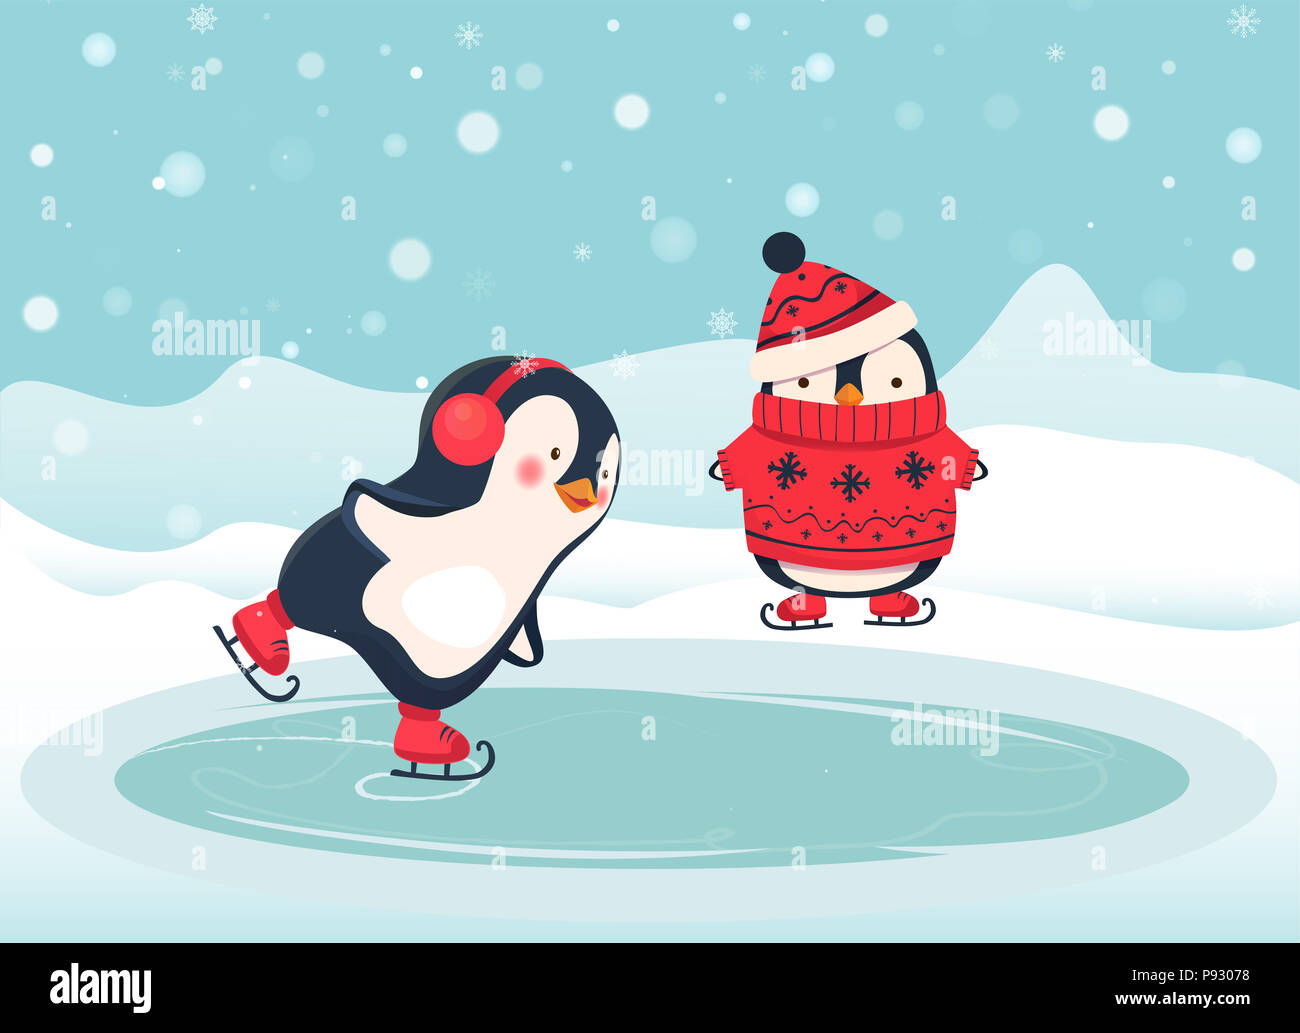 Пингвинчик на коньках